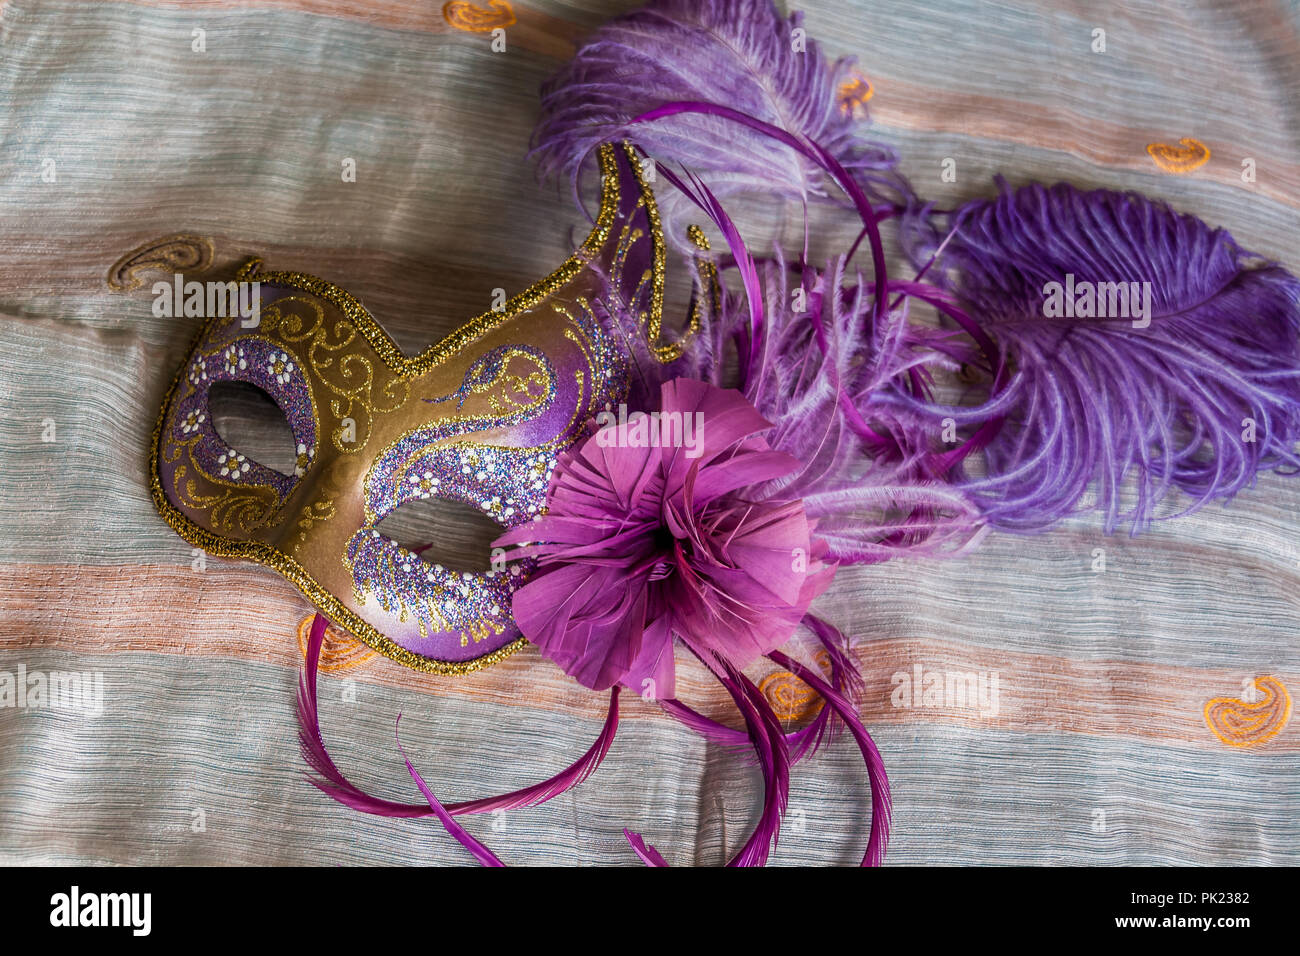 Gold und Purpur Venezianische Maske, mit Lila und Flieder Federn  Stockfotografie - Alamy